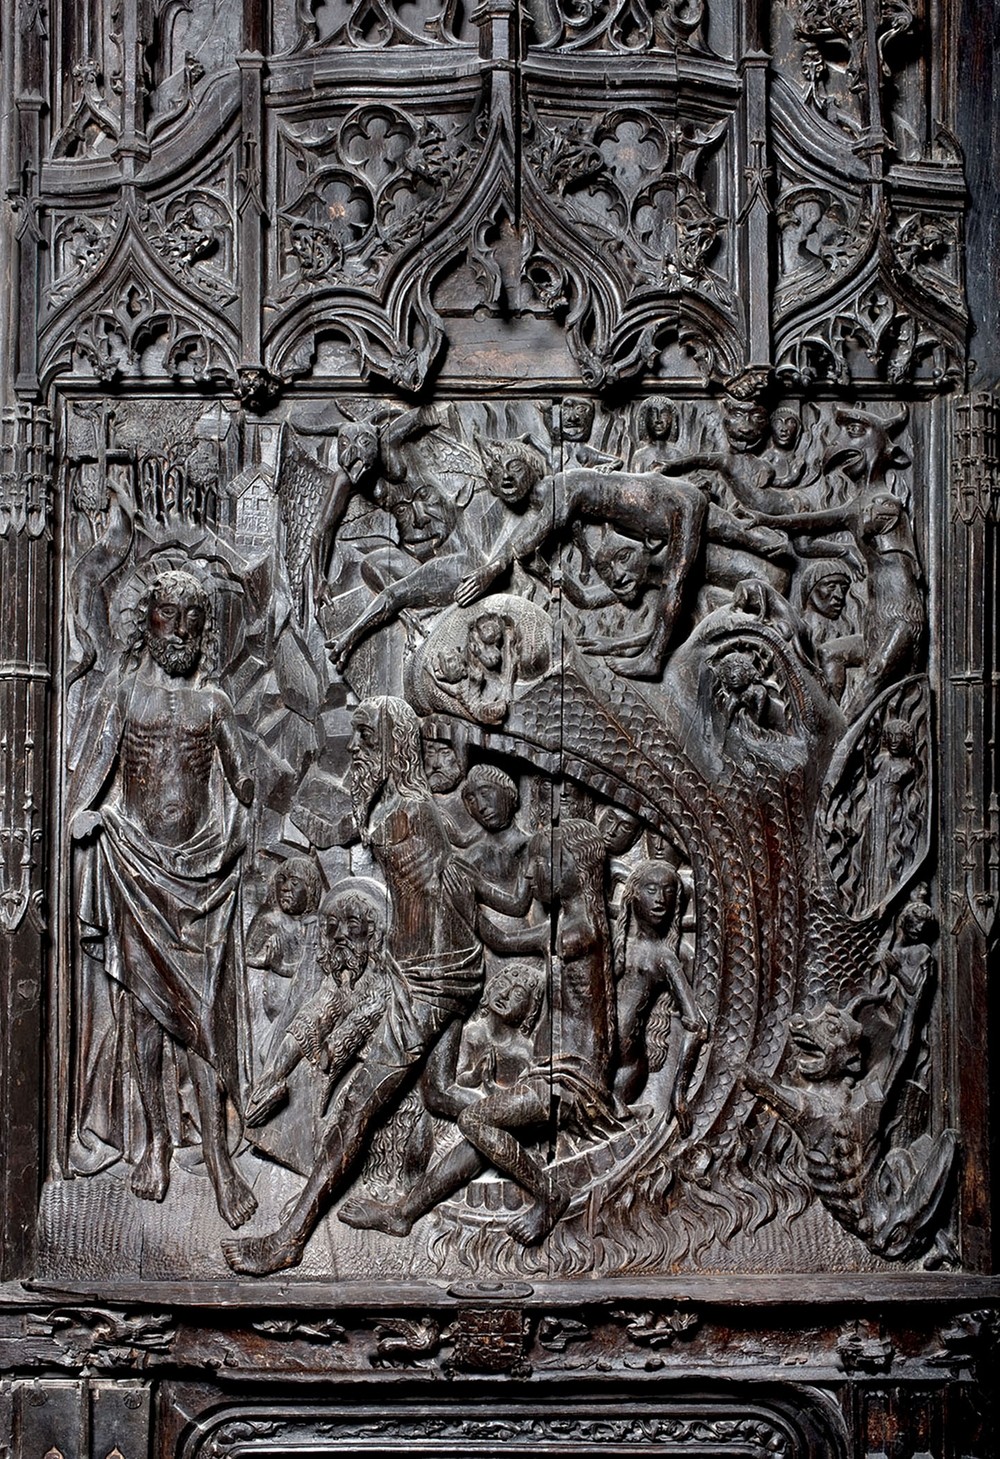 l descenso de Cristo al limbo, representado en una de las hojas de la puerta del claustro alto. /valdivielso